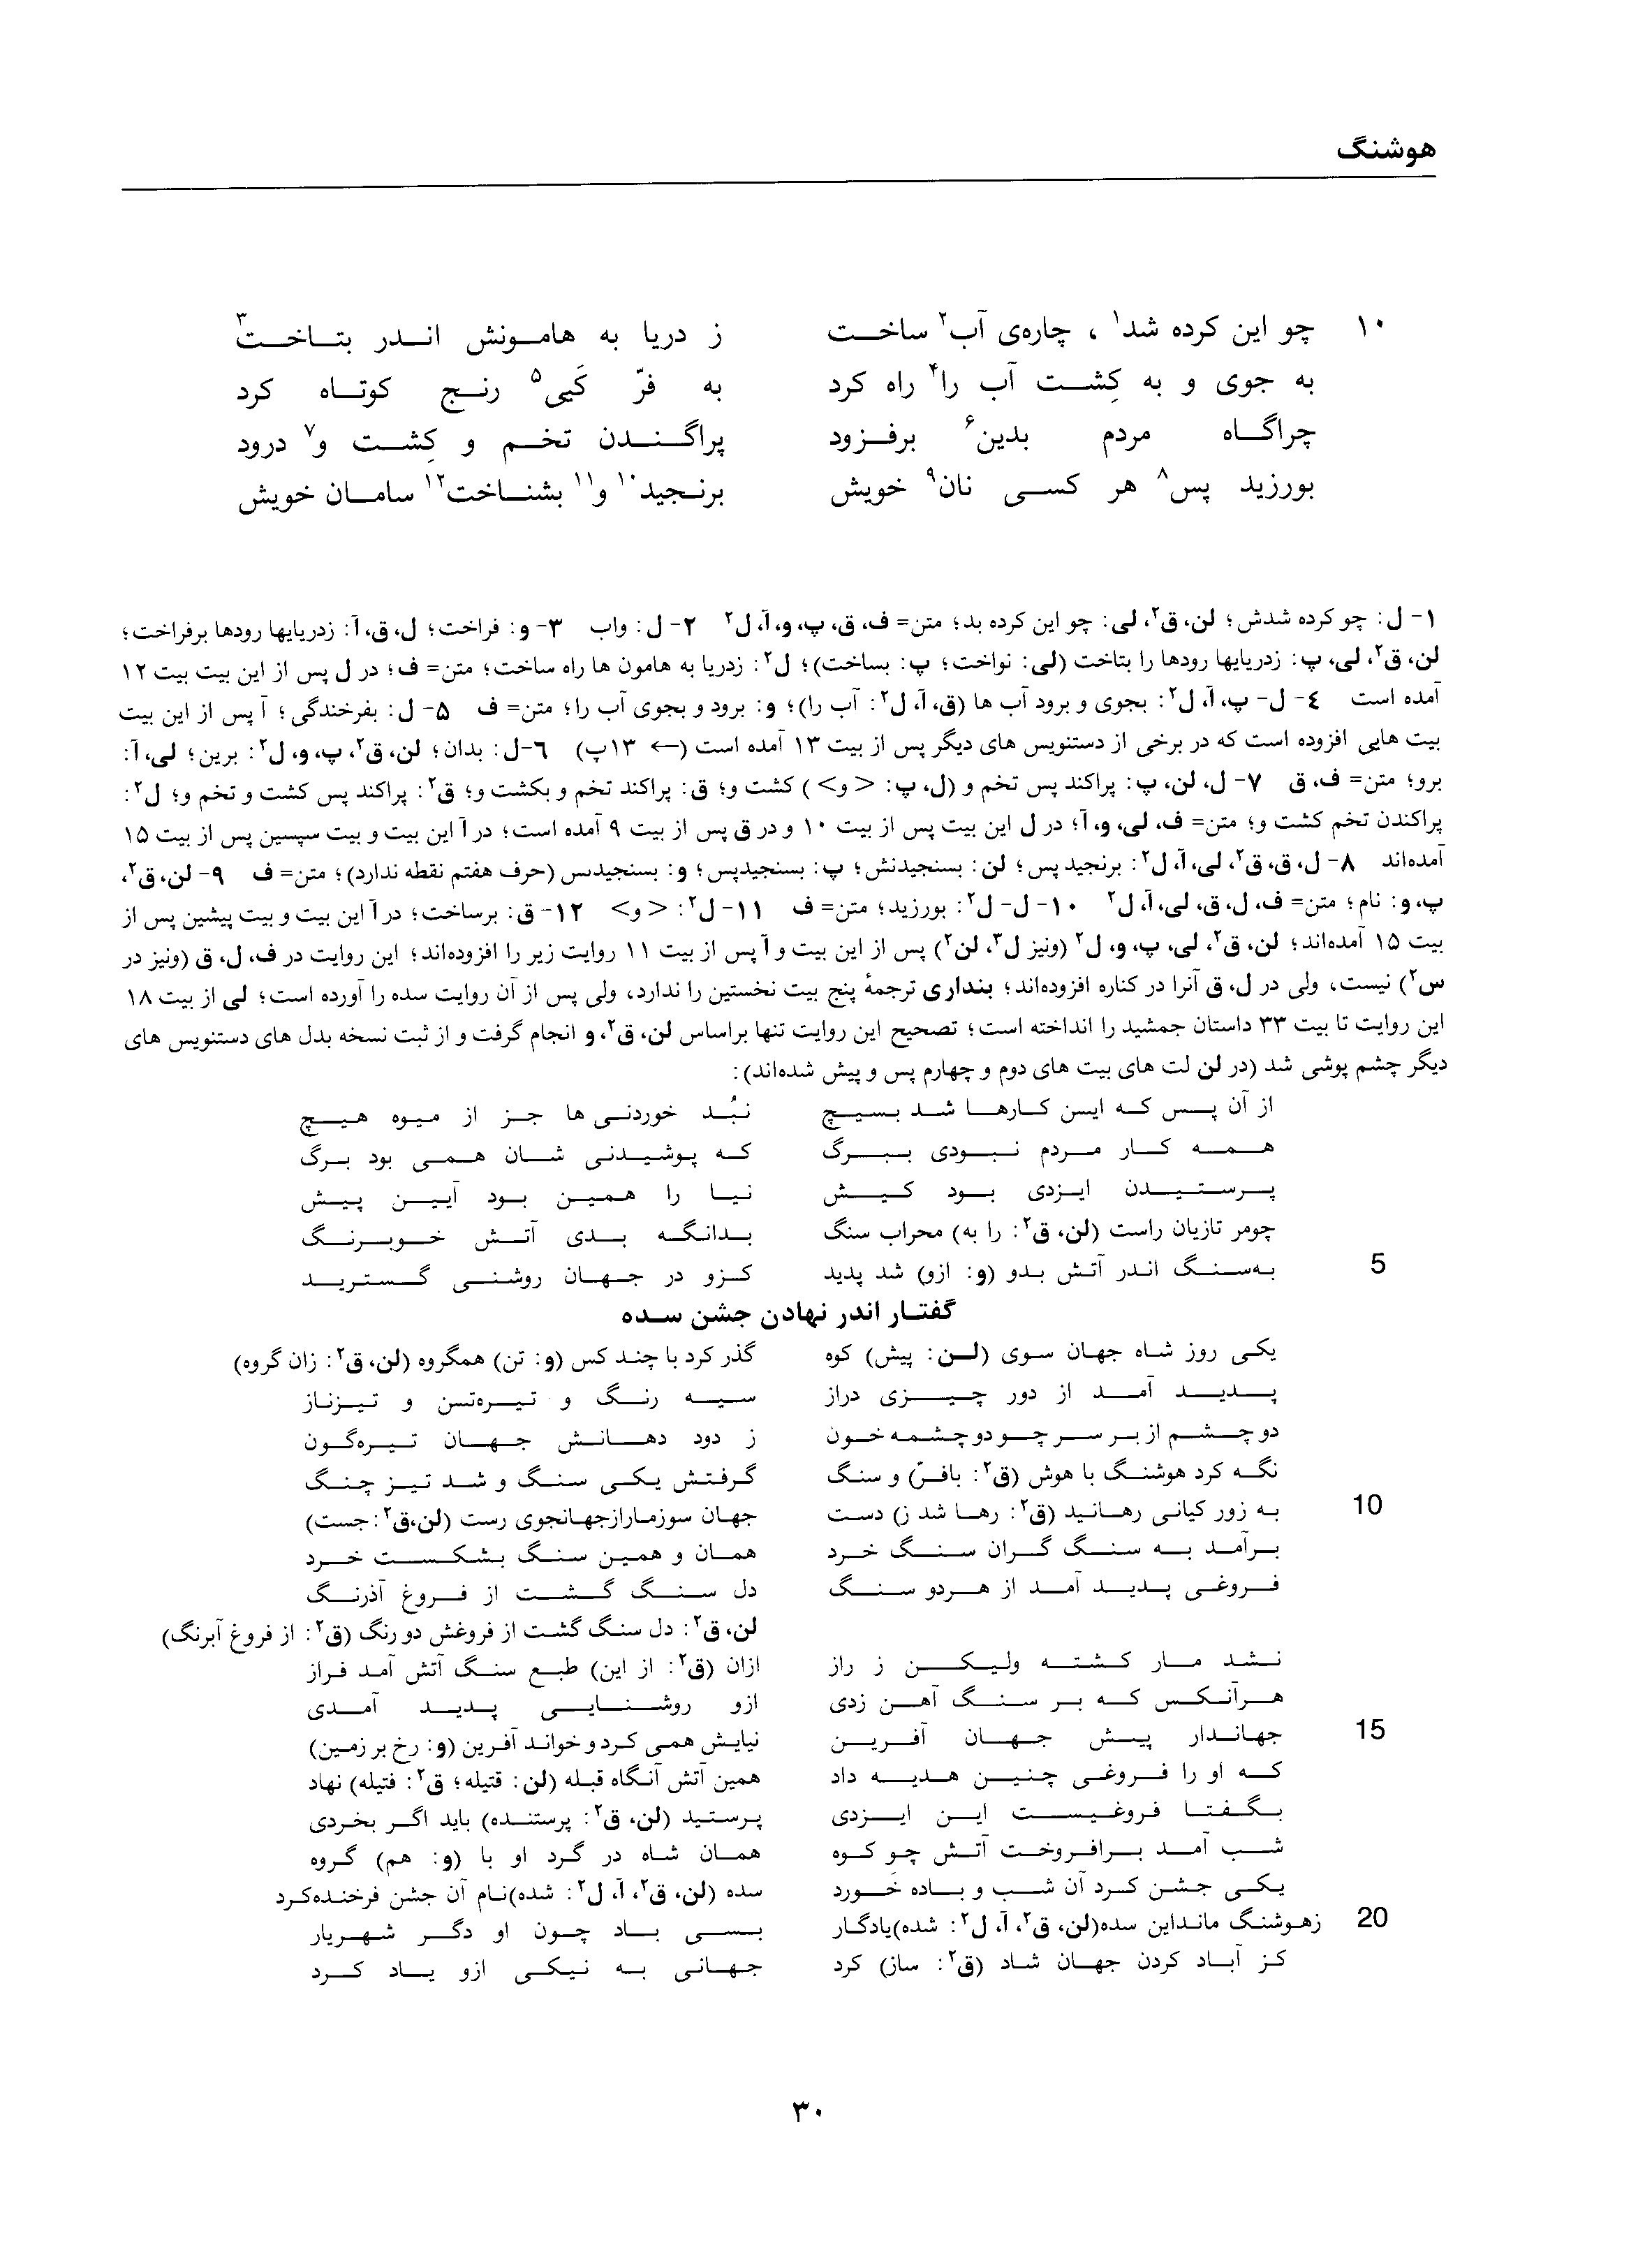 vol. 1, p. 30